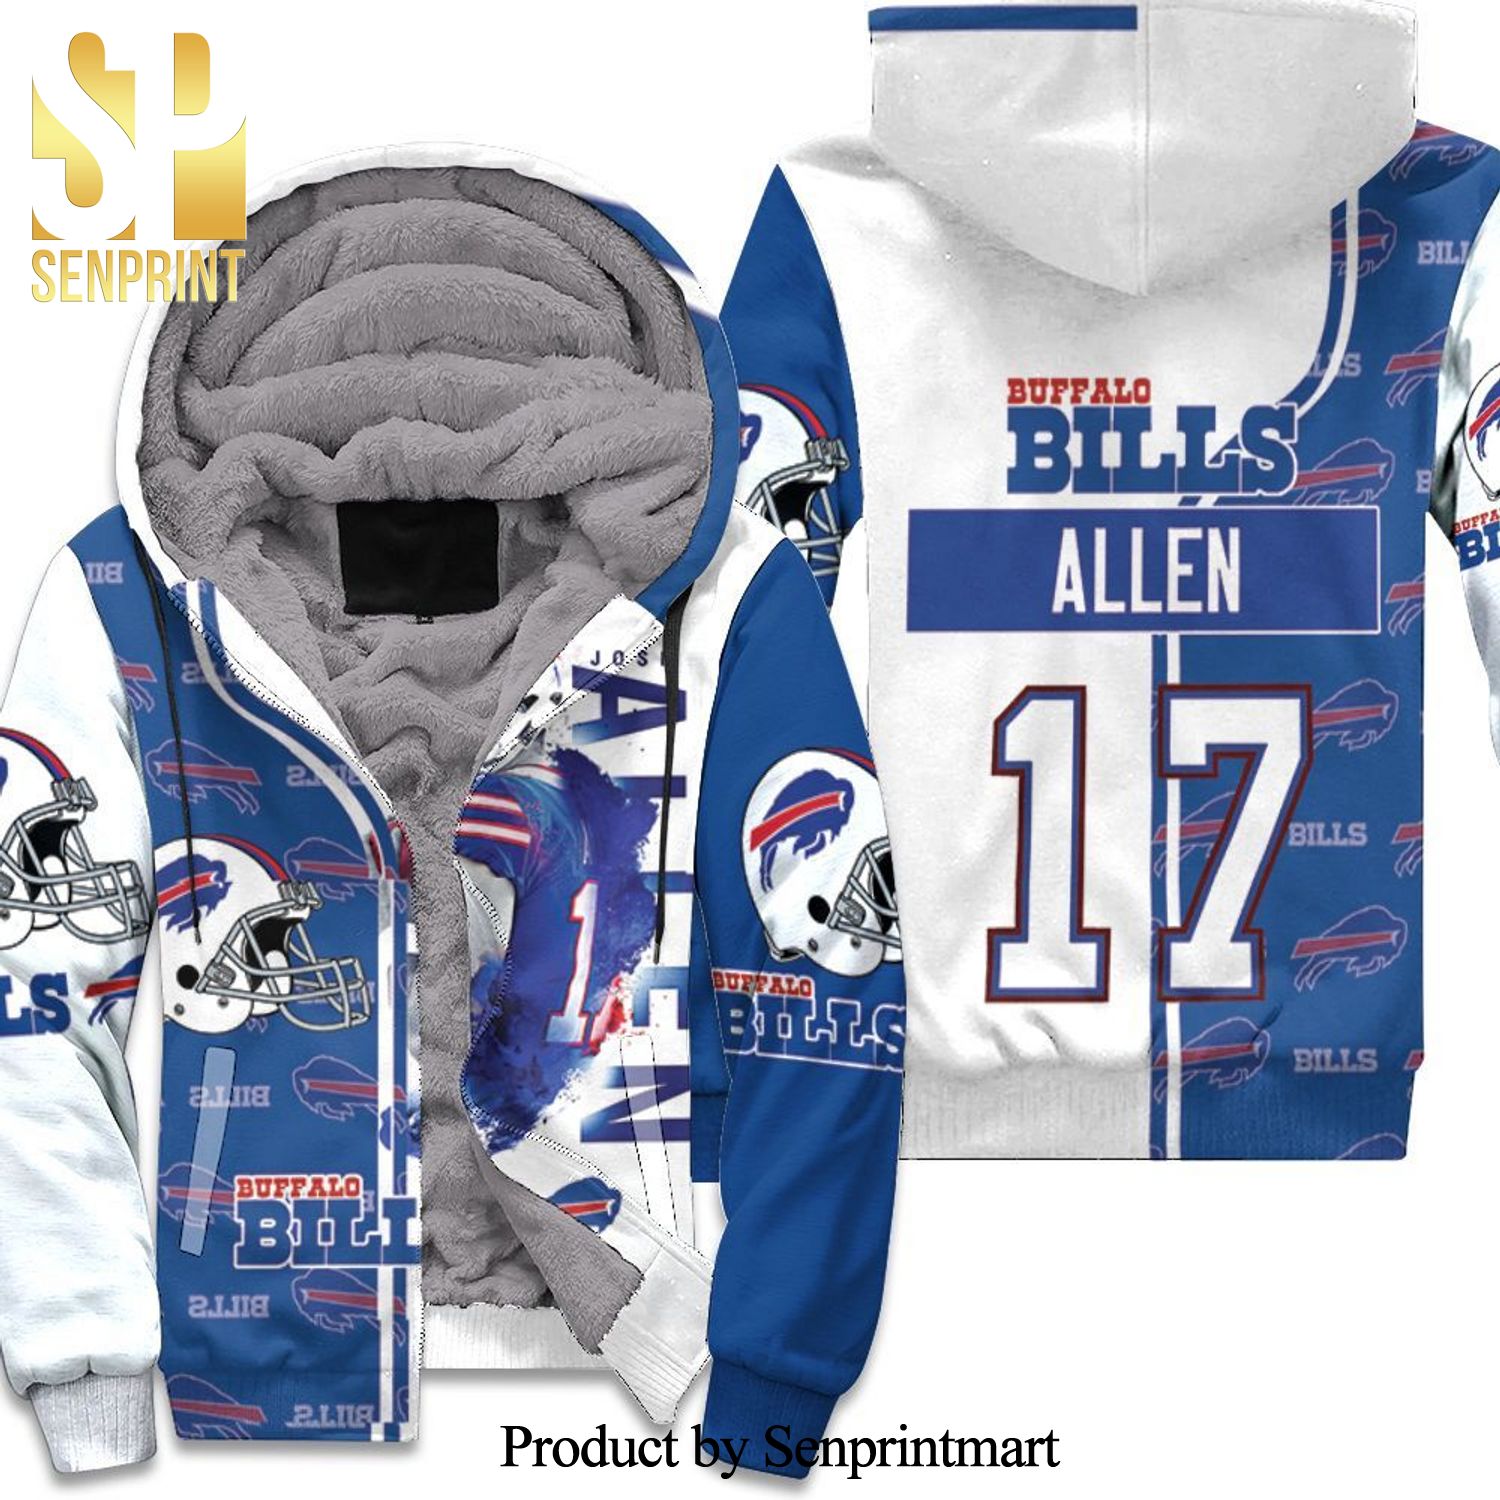 17 Josh Allen 17 Buffalo Bills Great Player NFL Season White Blue Hypebeast Fashion Unisex Fleece Hoodie